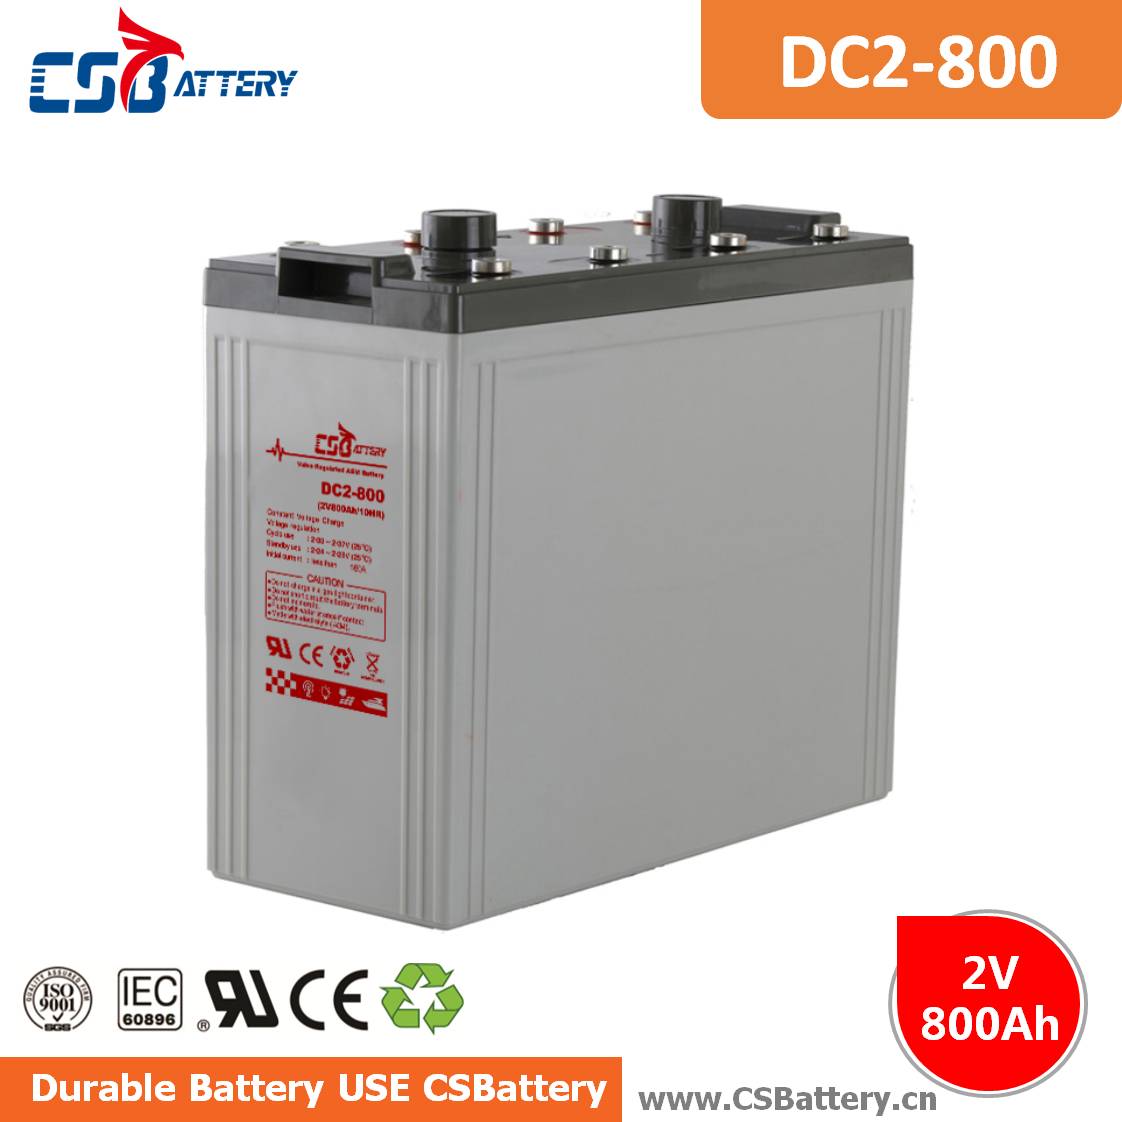 DC2-800 2V 800Ah Deep Cycle AGM Battery